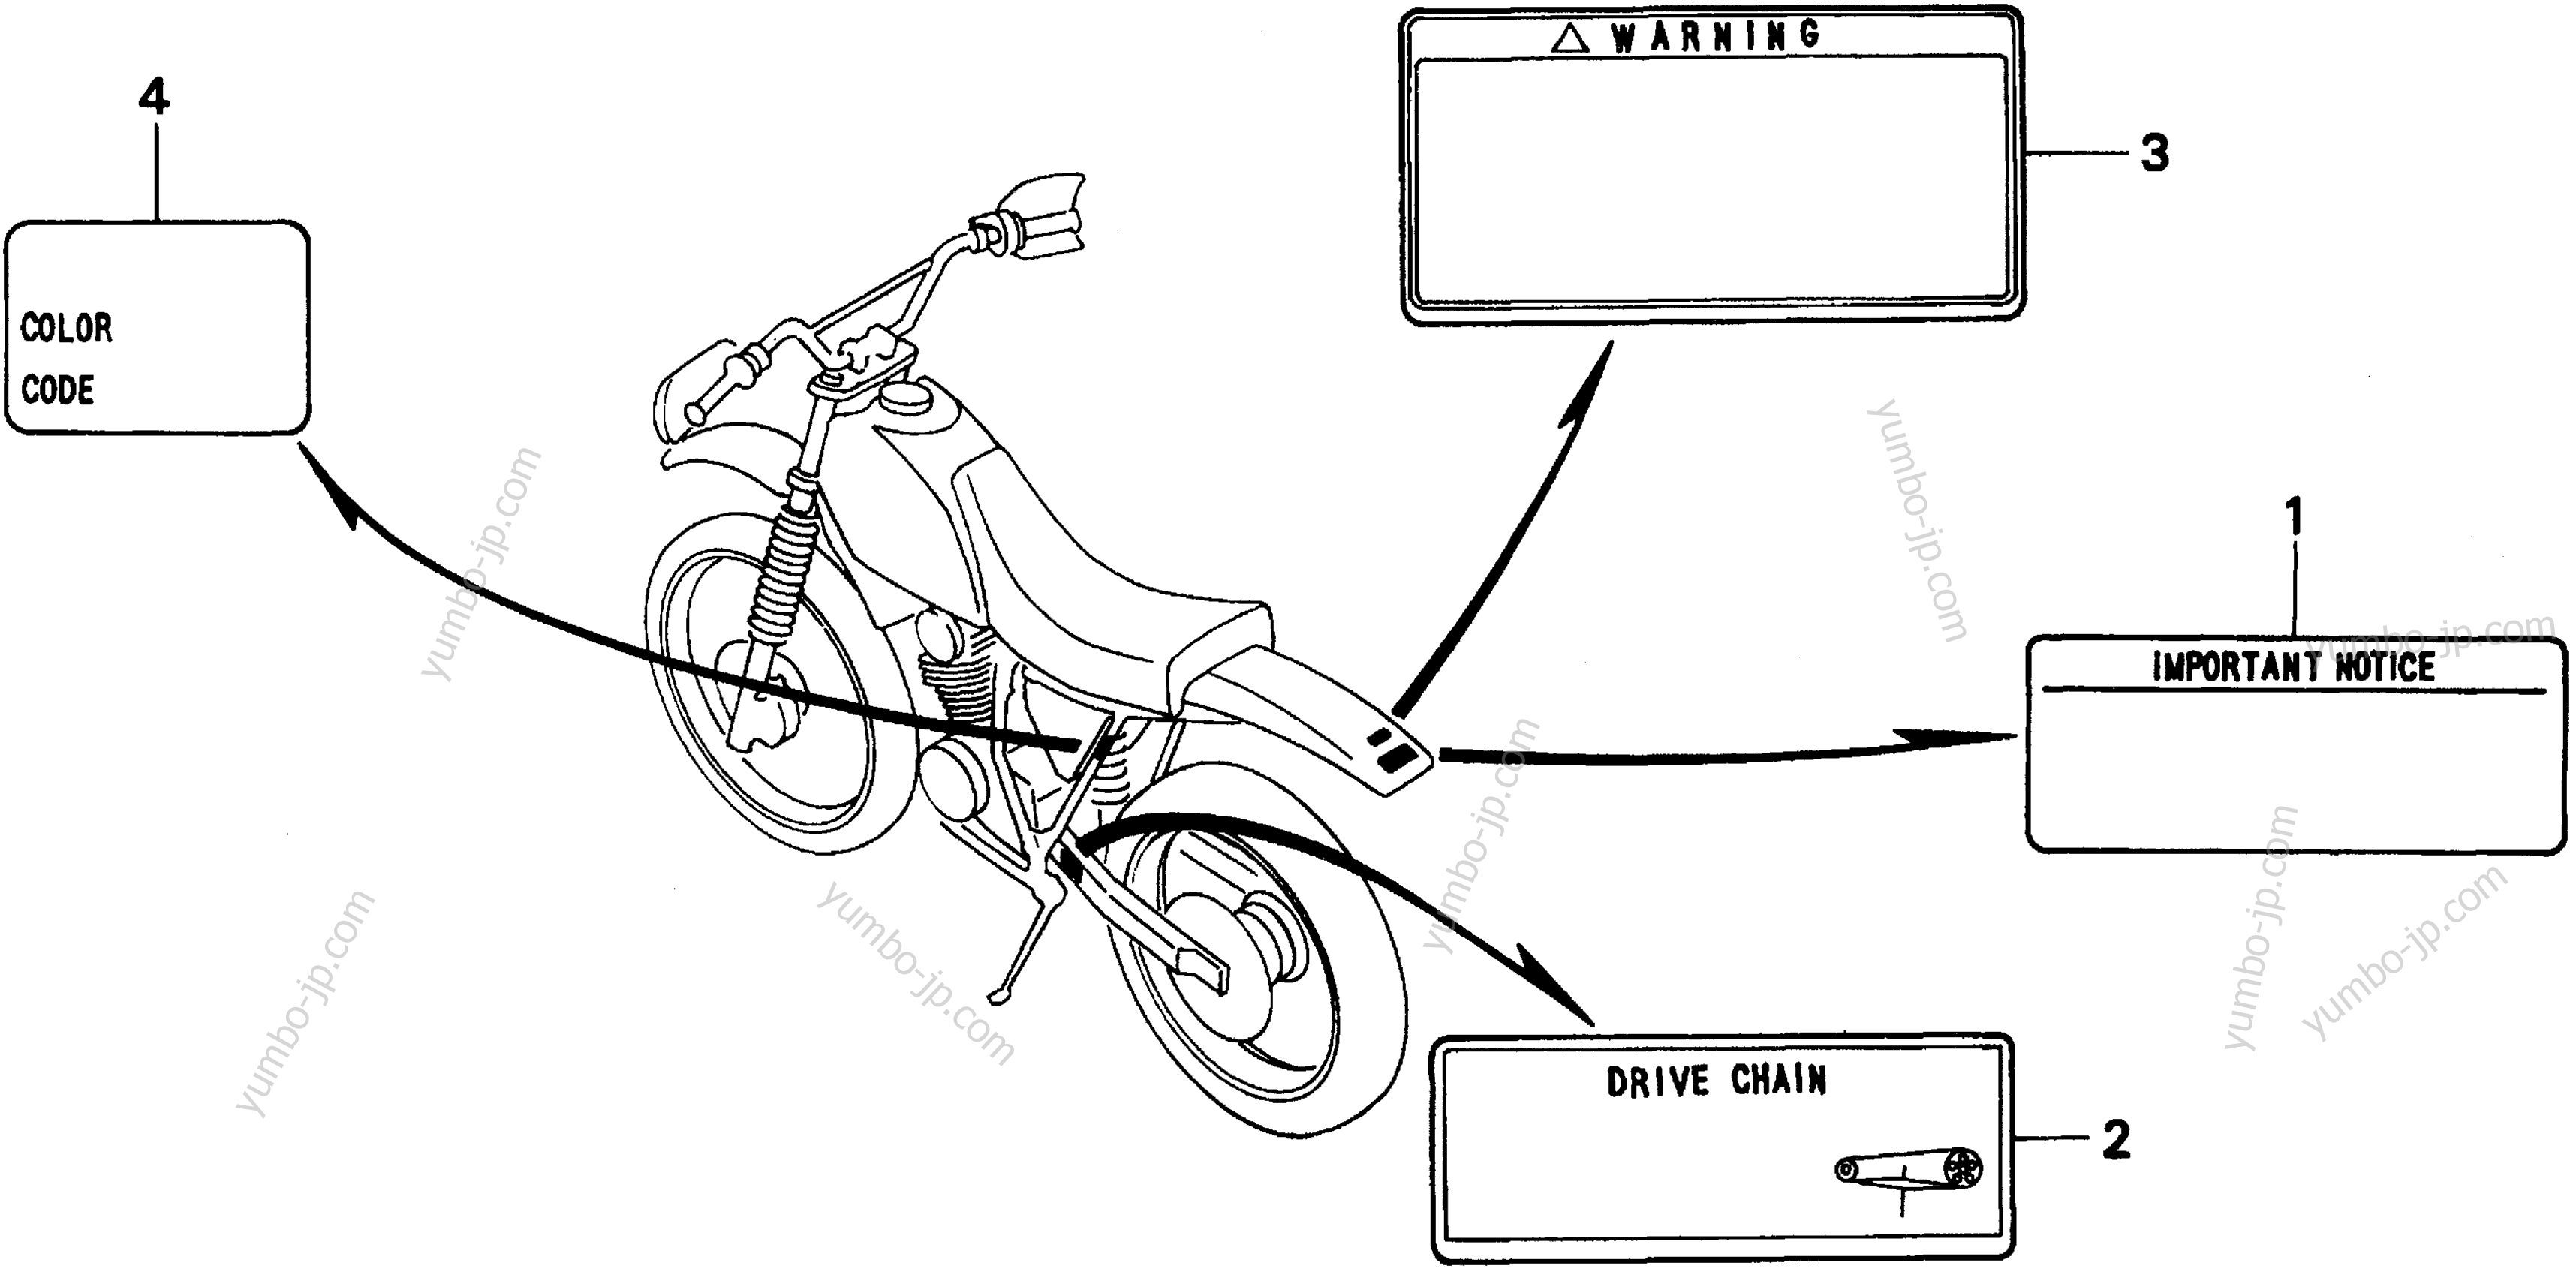 CAUTION LABELS для мотоциклов HONDA XR200R AC 1999 г.